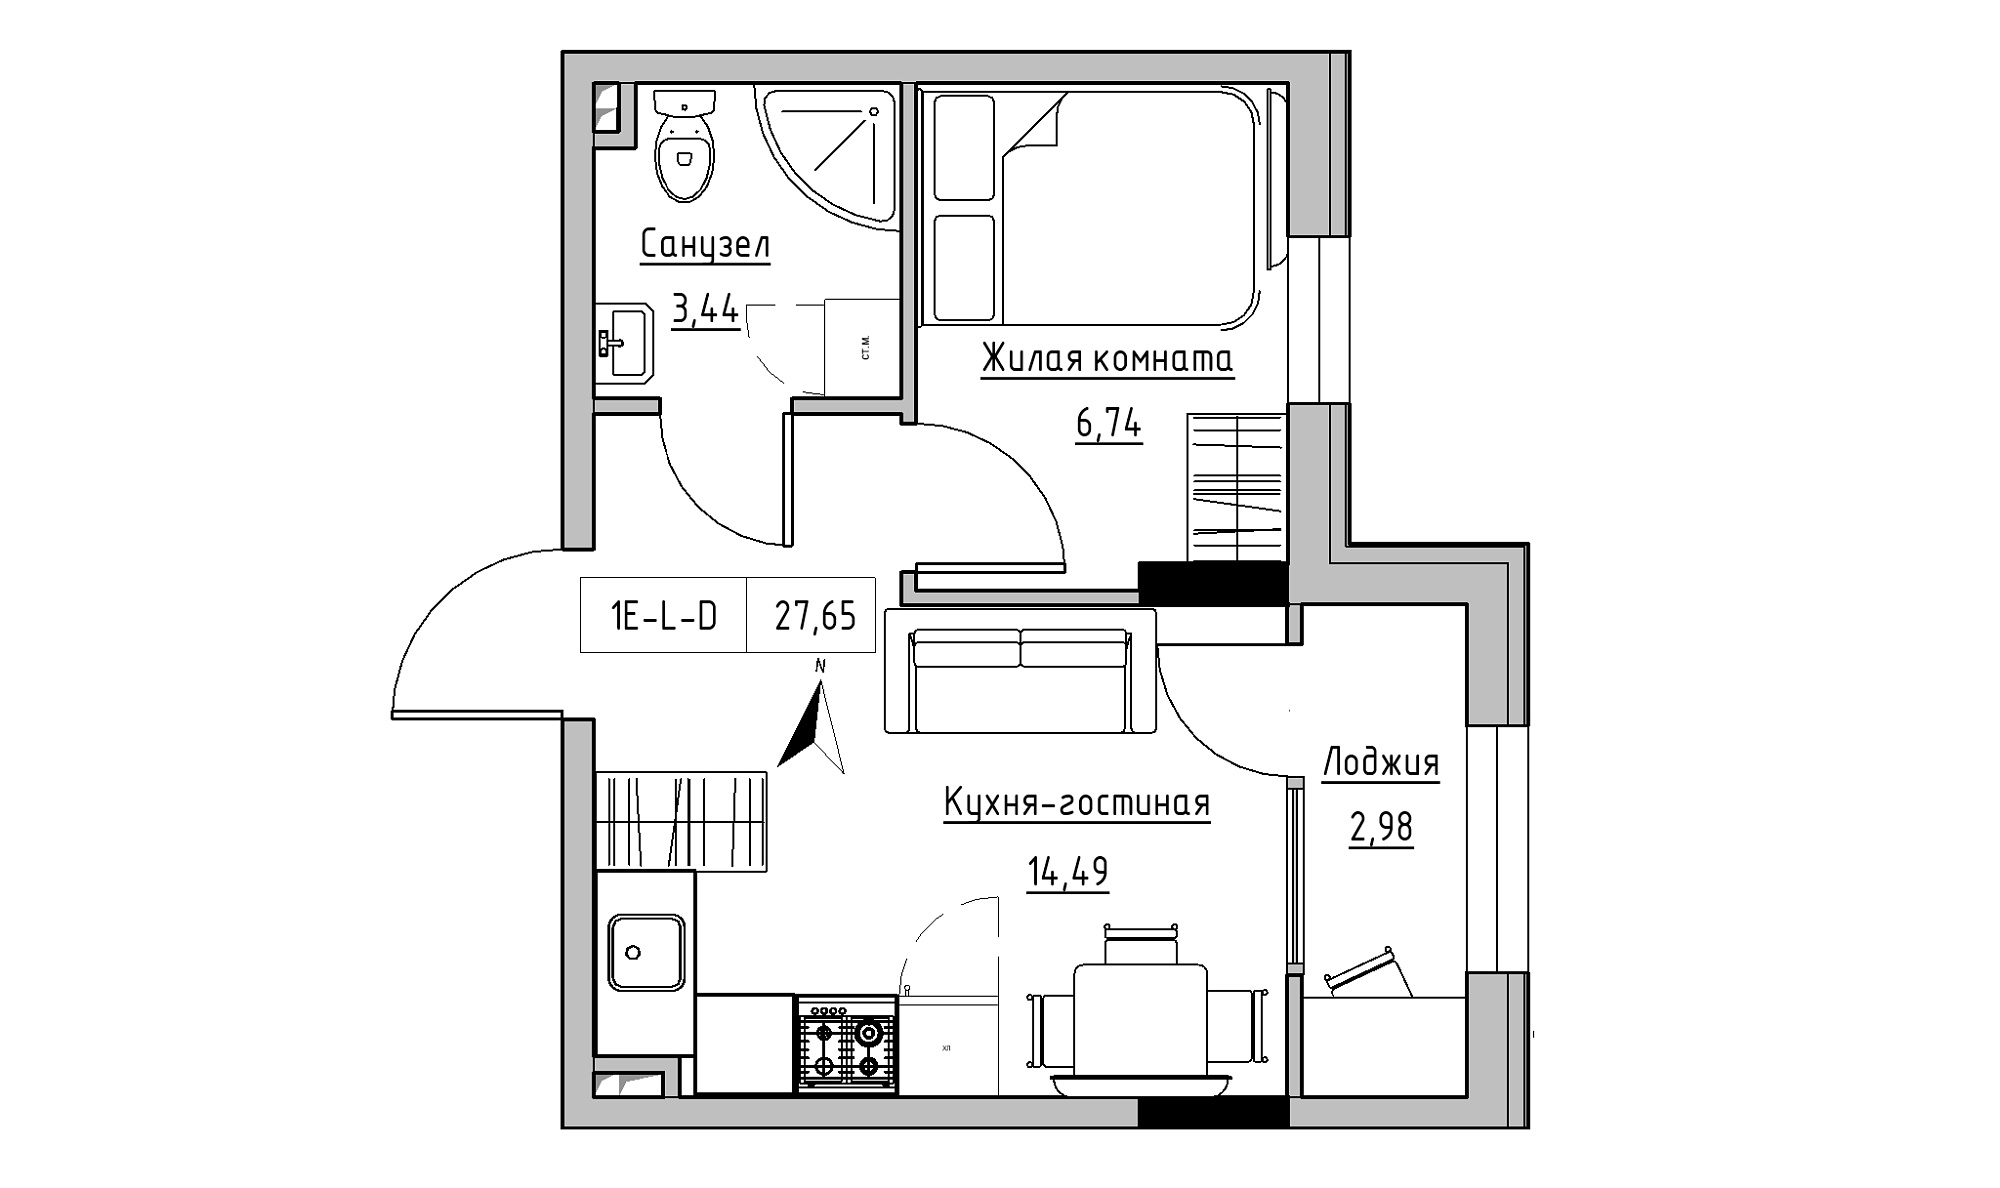 Планировка 1-к квартира площей 27.65м2, KS-025-01/0001.